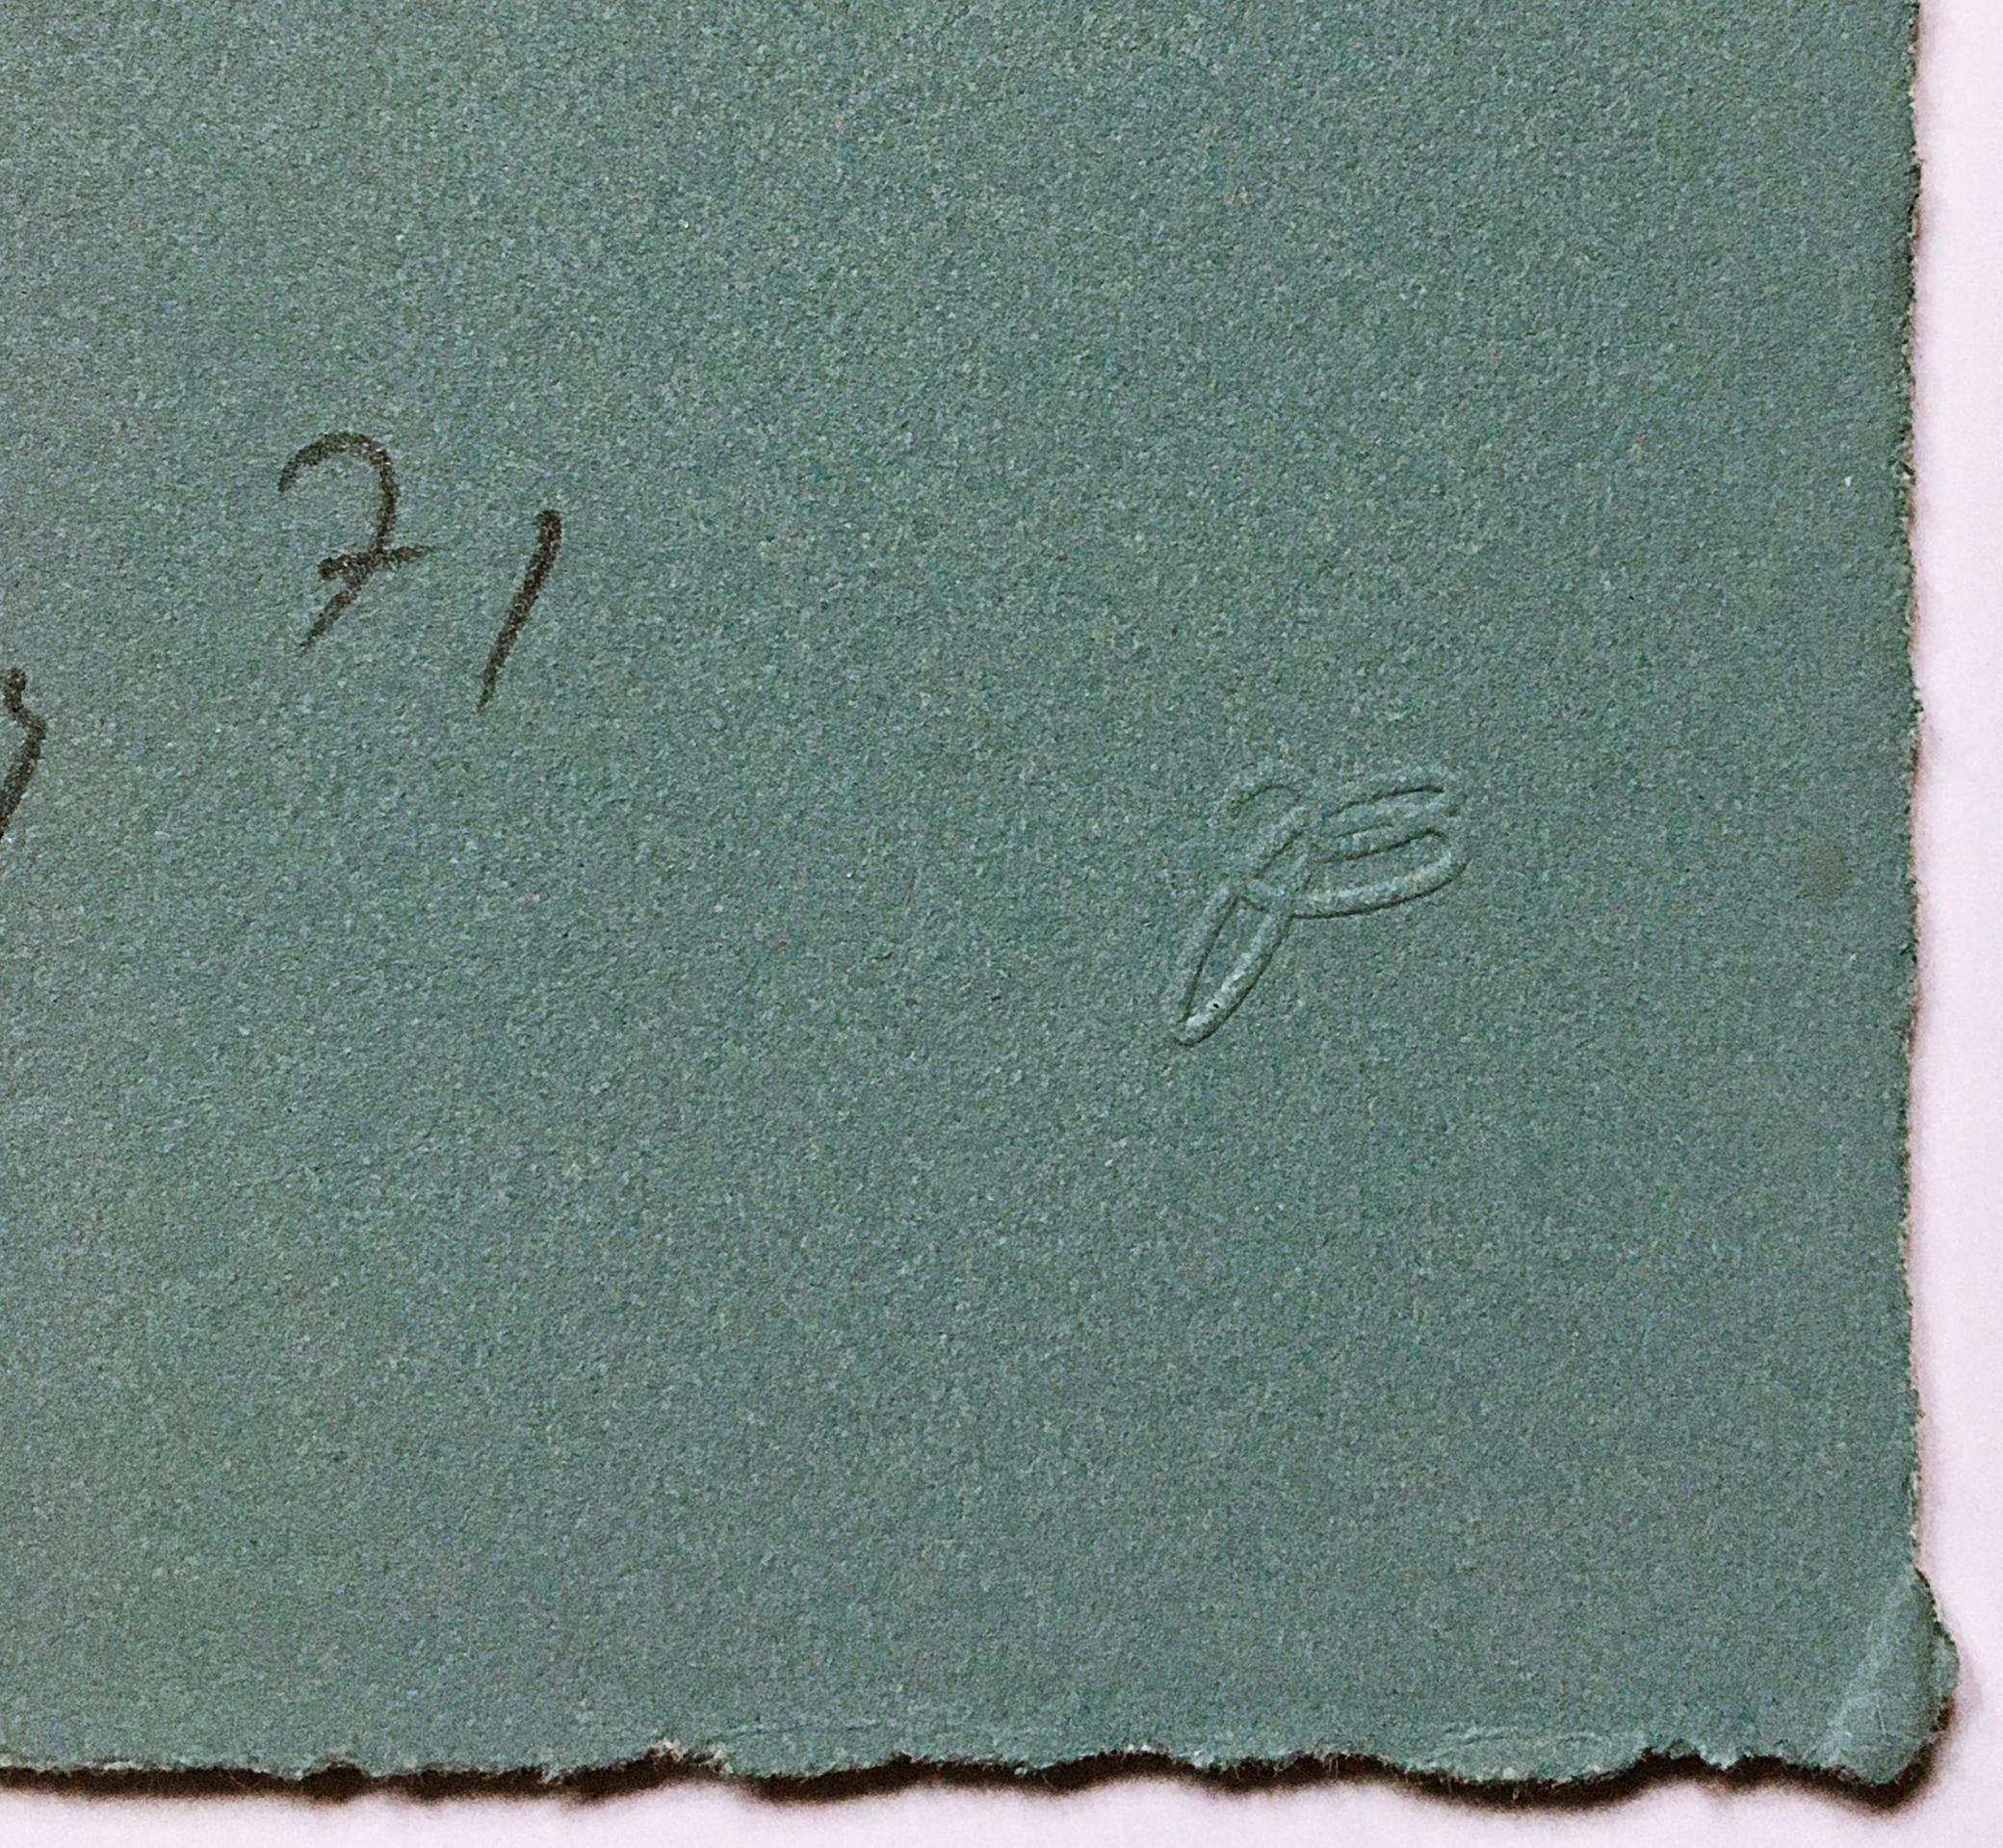 George Rickey
Variations du tétraèdre, 1971
Lithographie en couleurs sur papier Rives BFK avec bords décalés
Signé à la main, numéroté 52/100 et daté au recto avec le cachet de l'éditeur et de l'imprimeur.
22 × 18 pouces
Non encadré
Cette rare